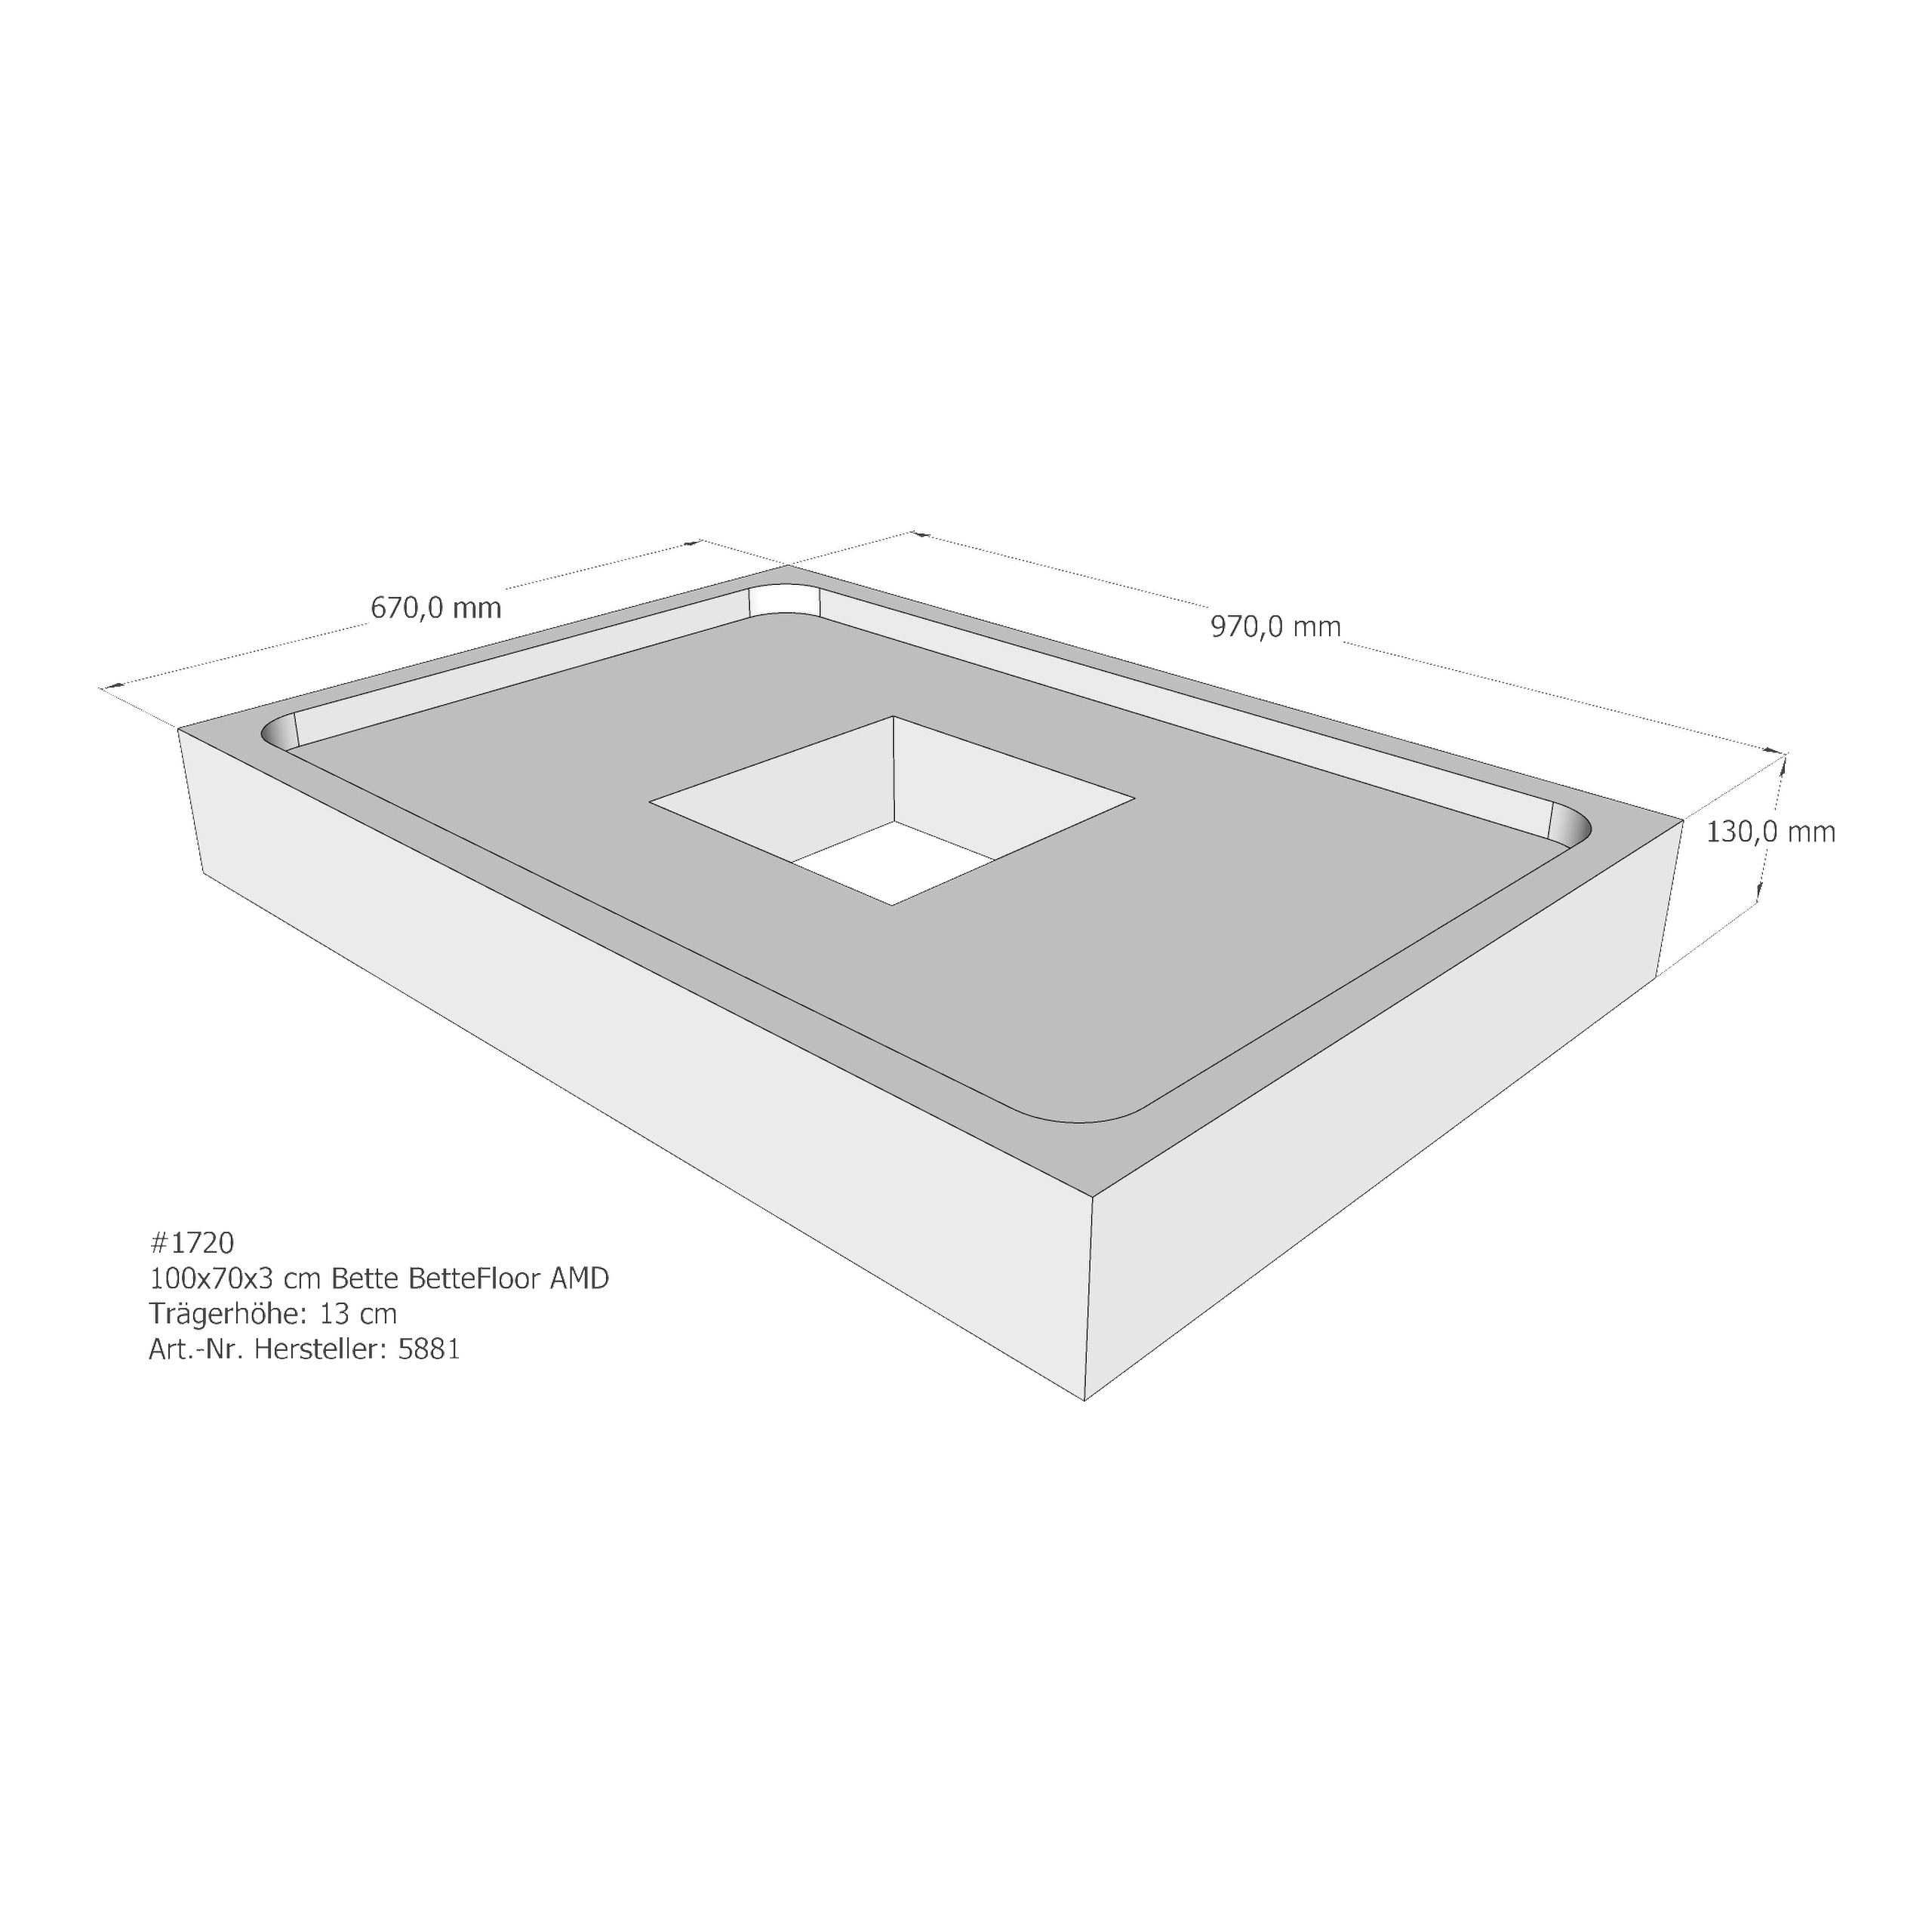 Duschwannenträger Bette BetteFloor 100x70x3 cm AMD